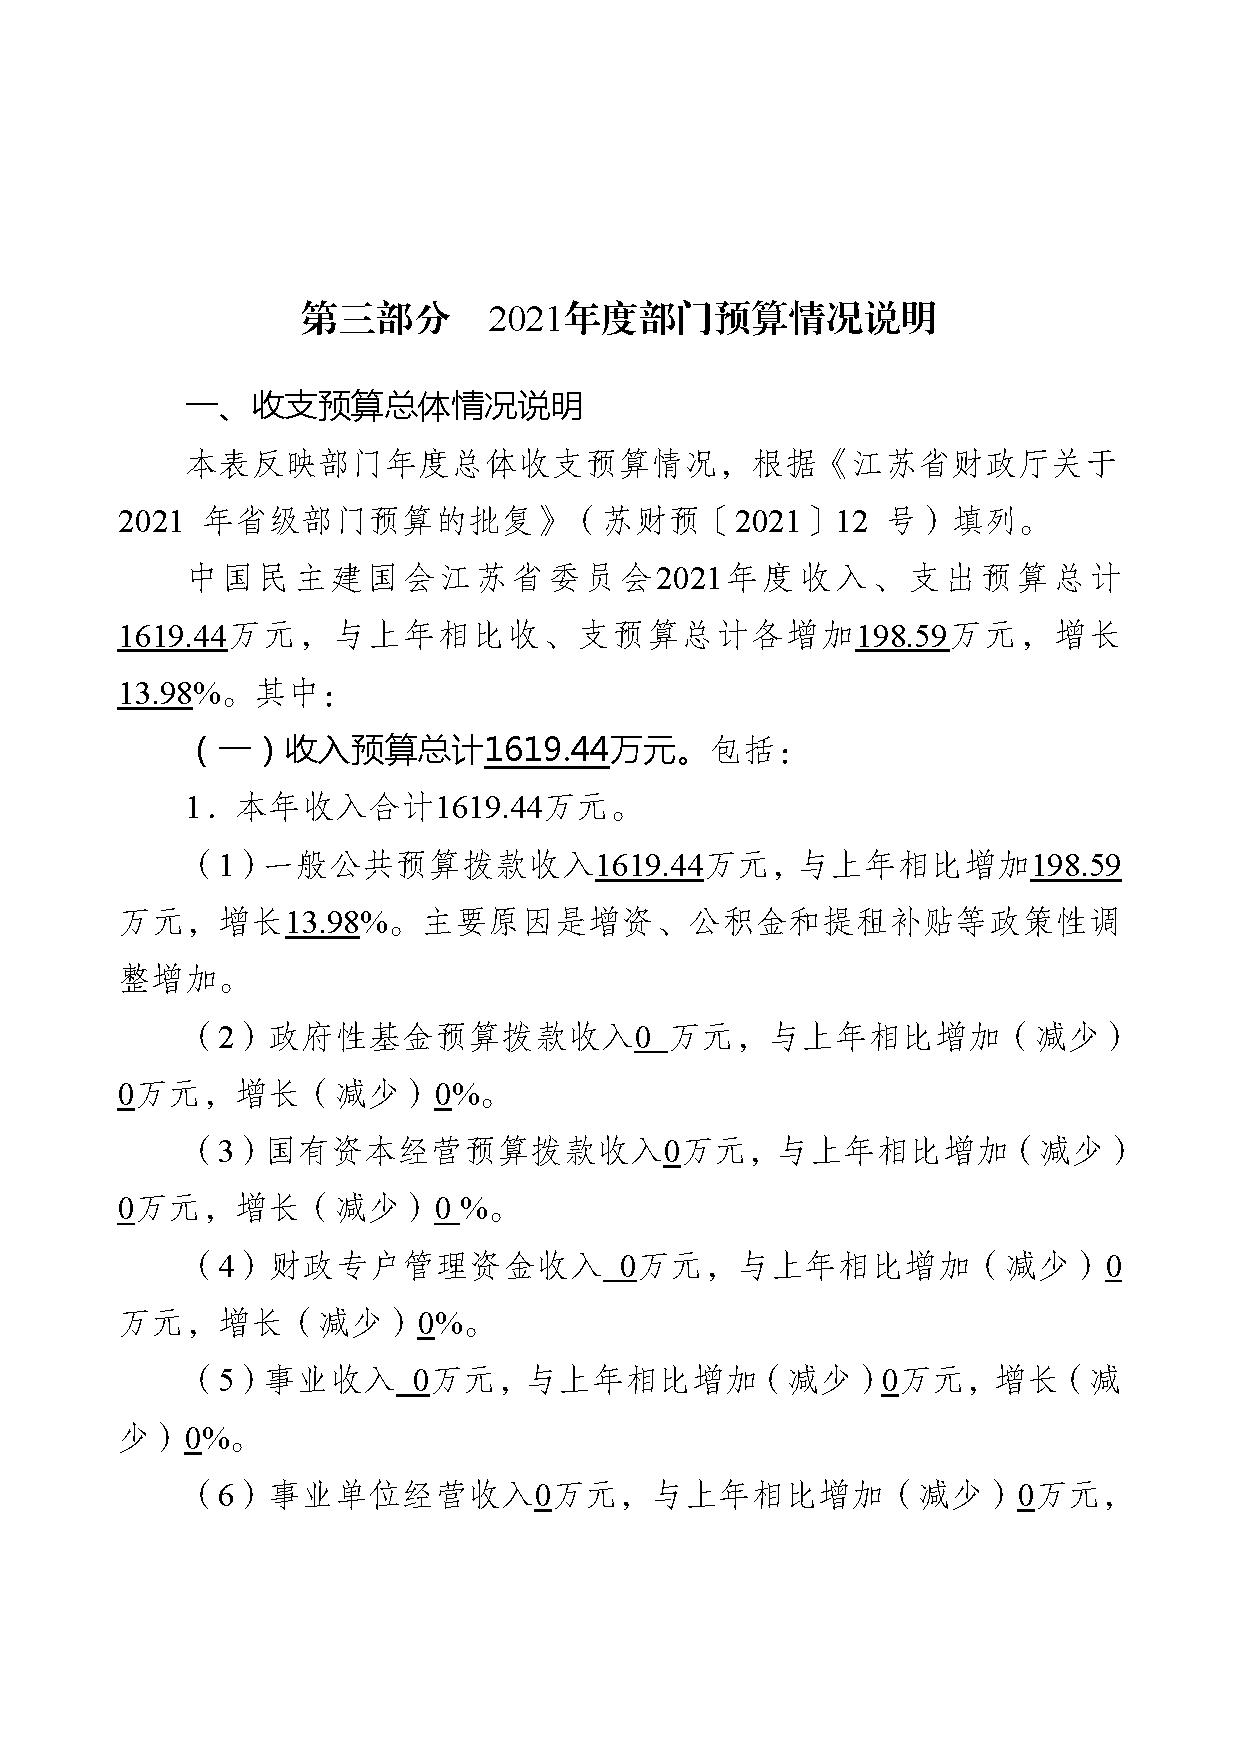 2021年度中国民主建国会江苏省委员会部门预算公开-21.jpg